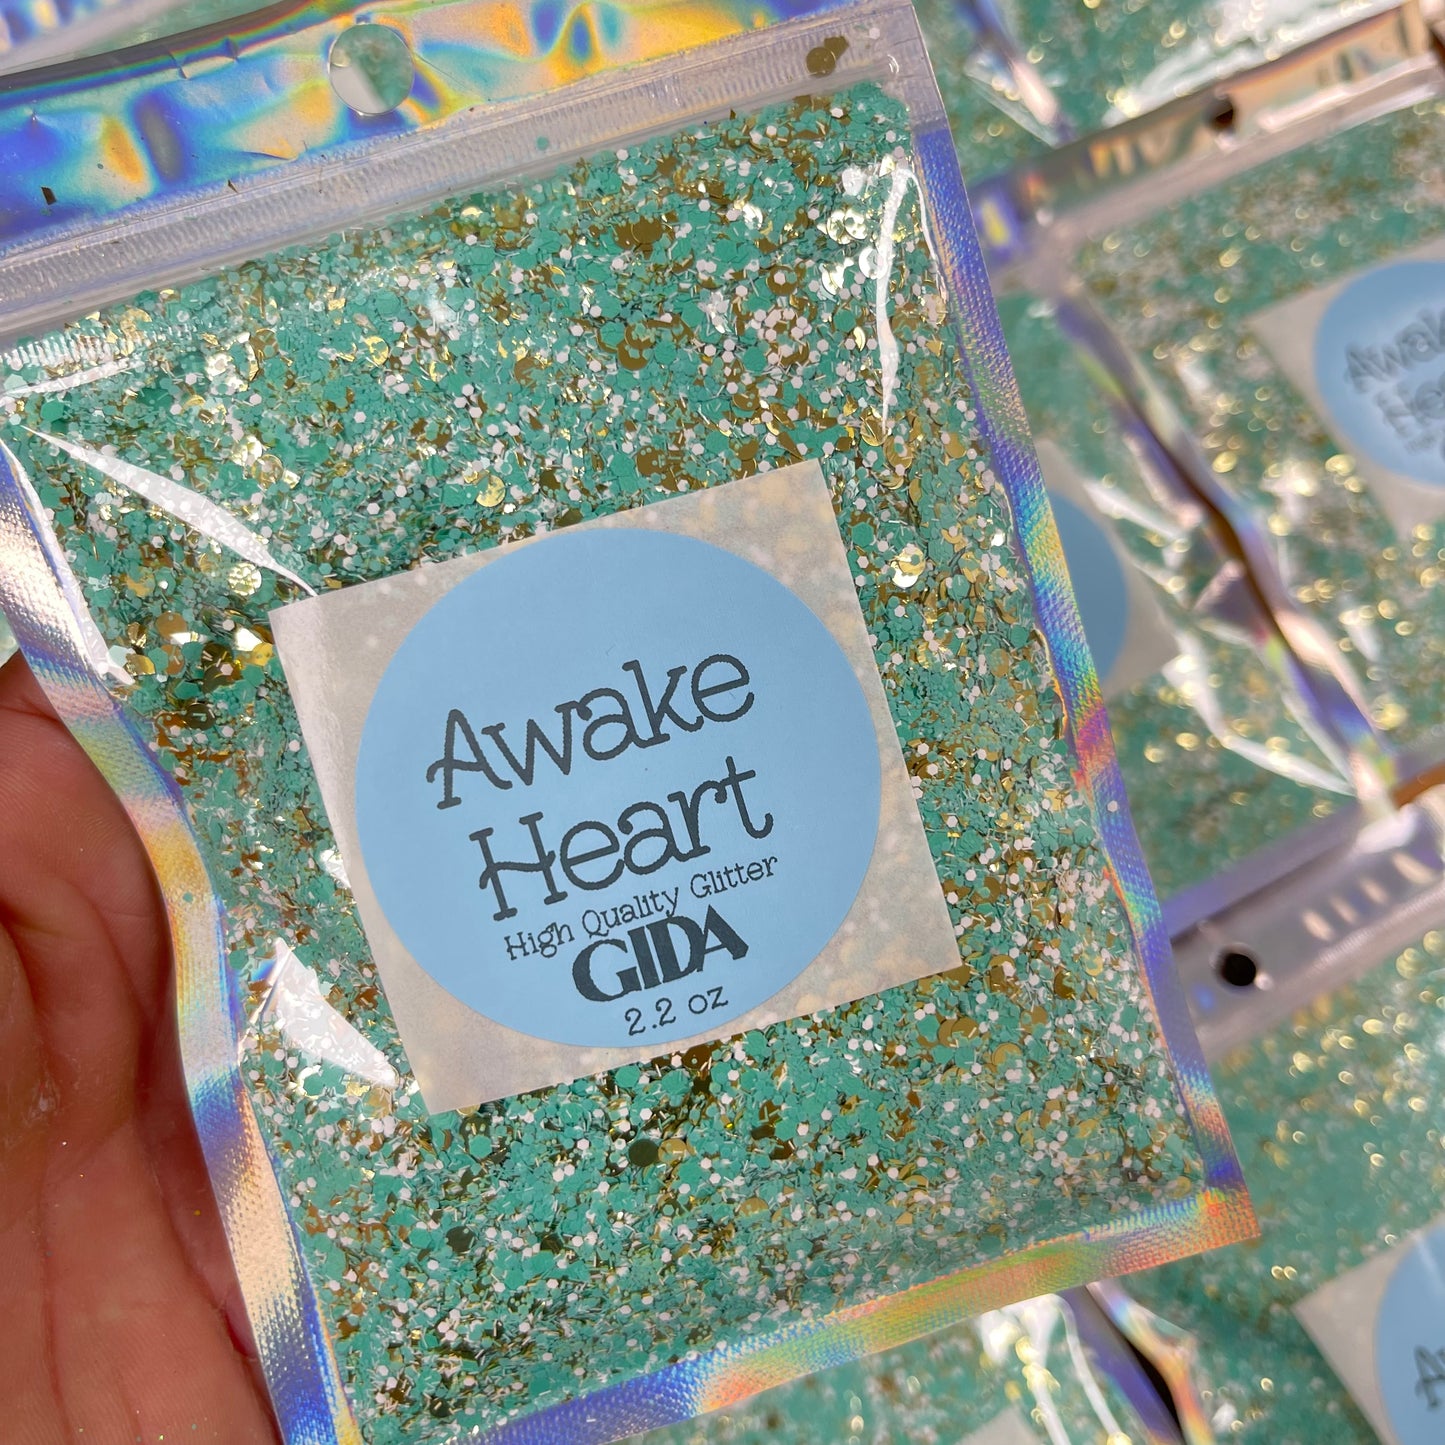 Awake Heart Chunky Glitter - 2.2 oz - GIDA DESIGN 